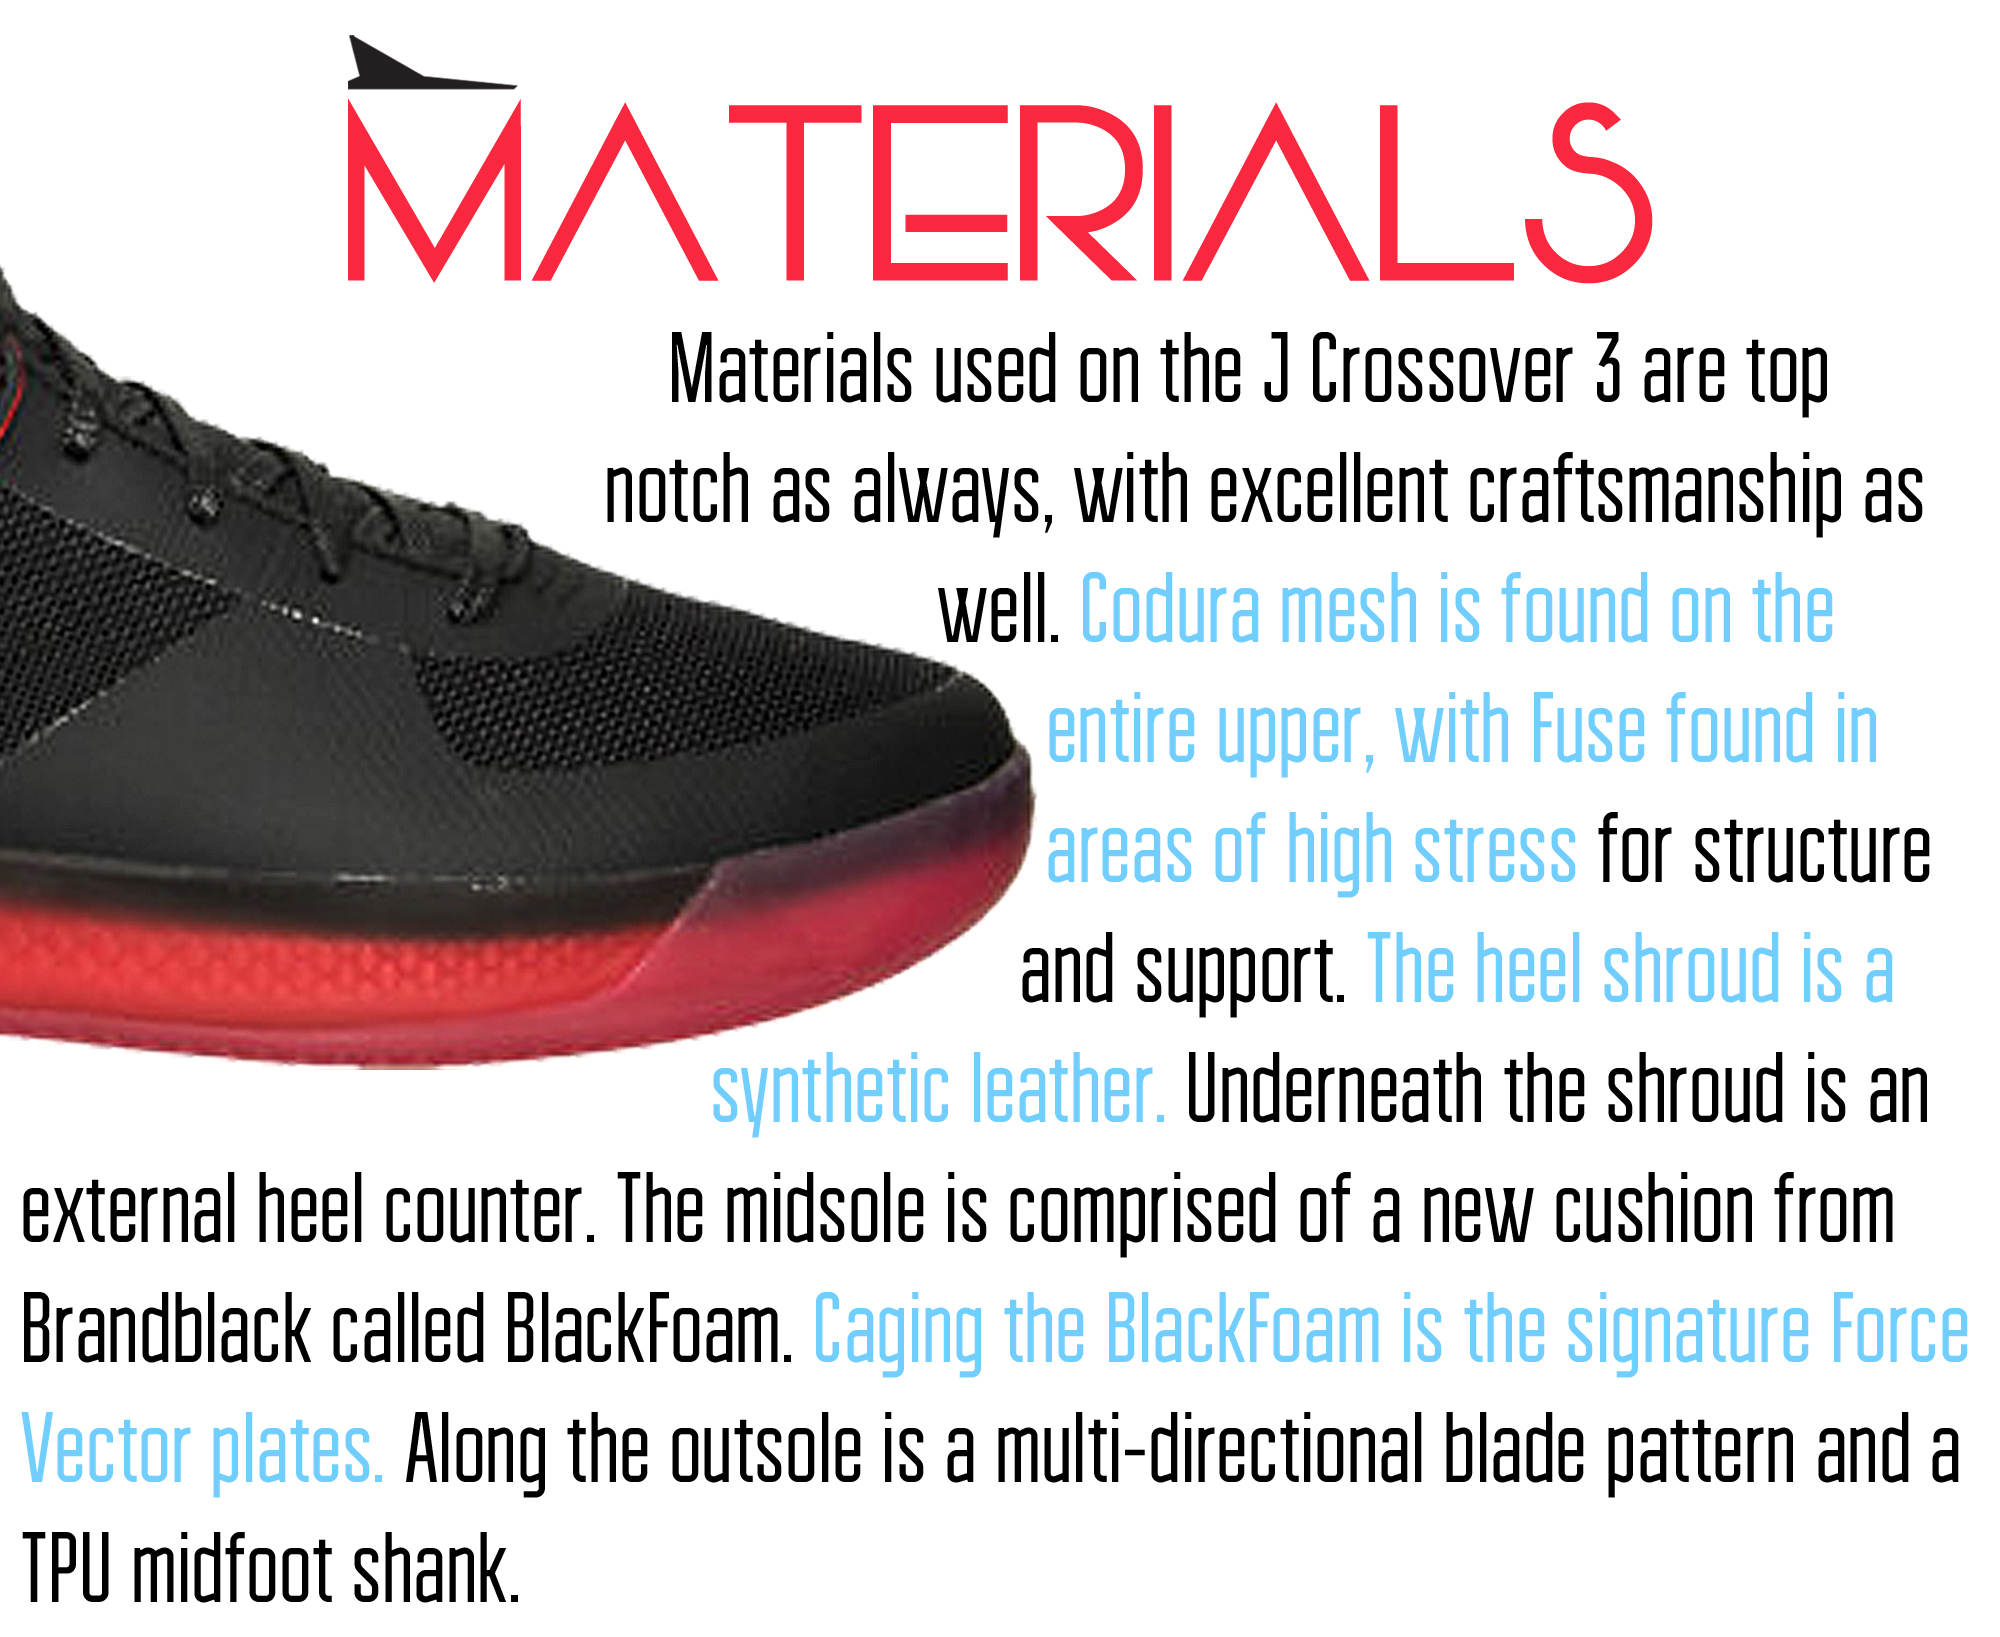 J Crossover 3 - Materials